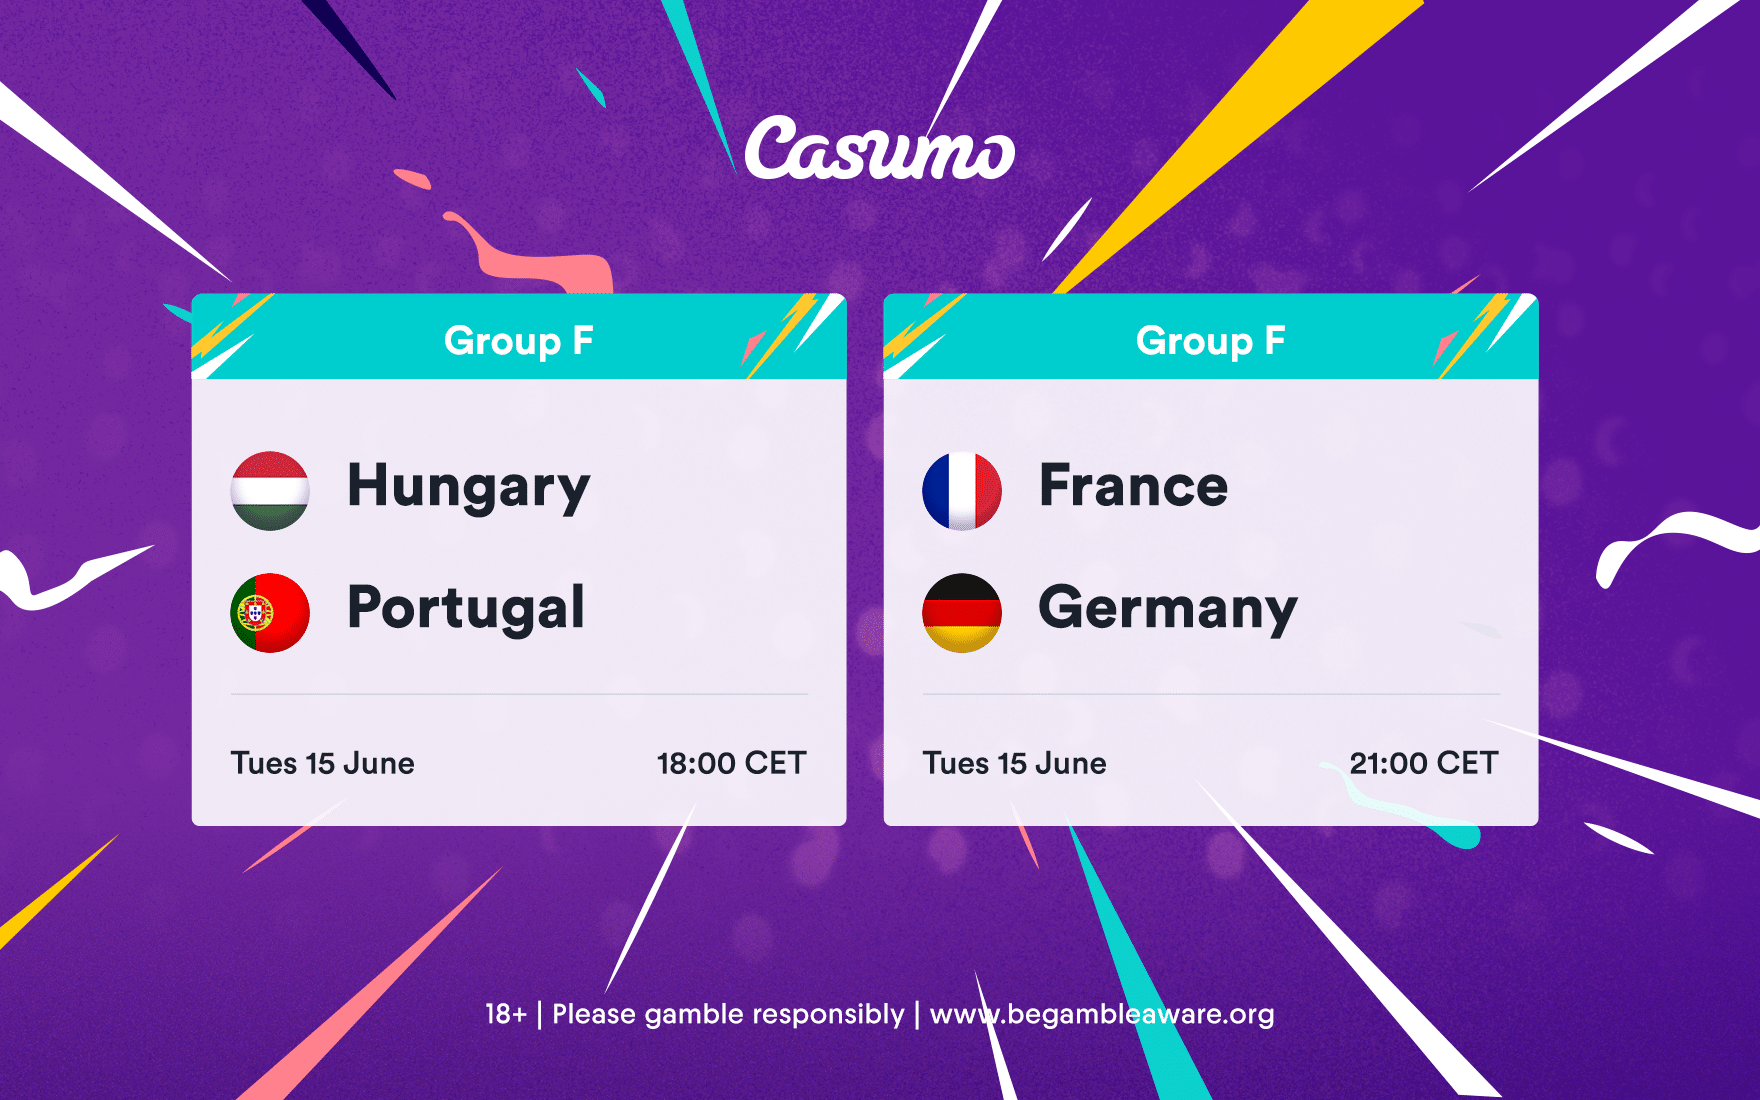 France v Germany|Ranska - Saksa||France v Germany|Frankrike - Tyskland